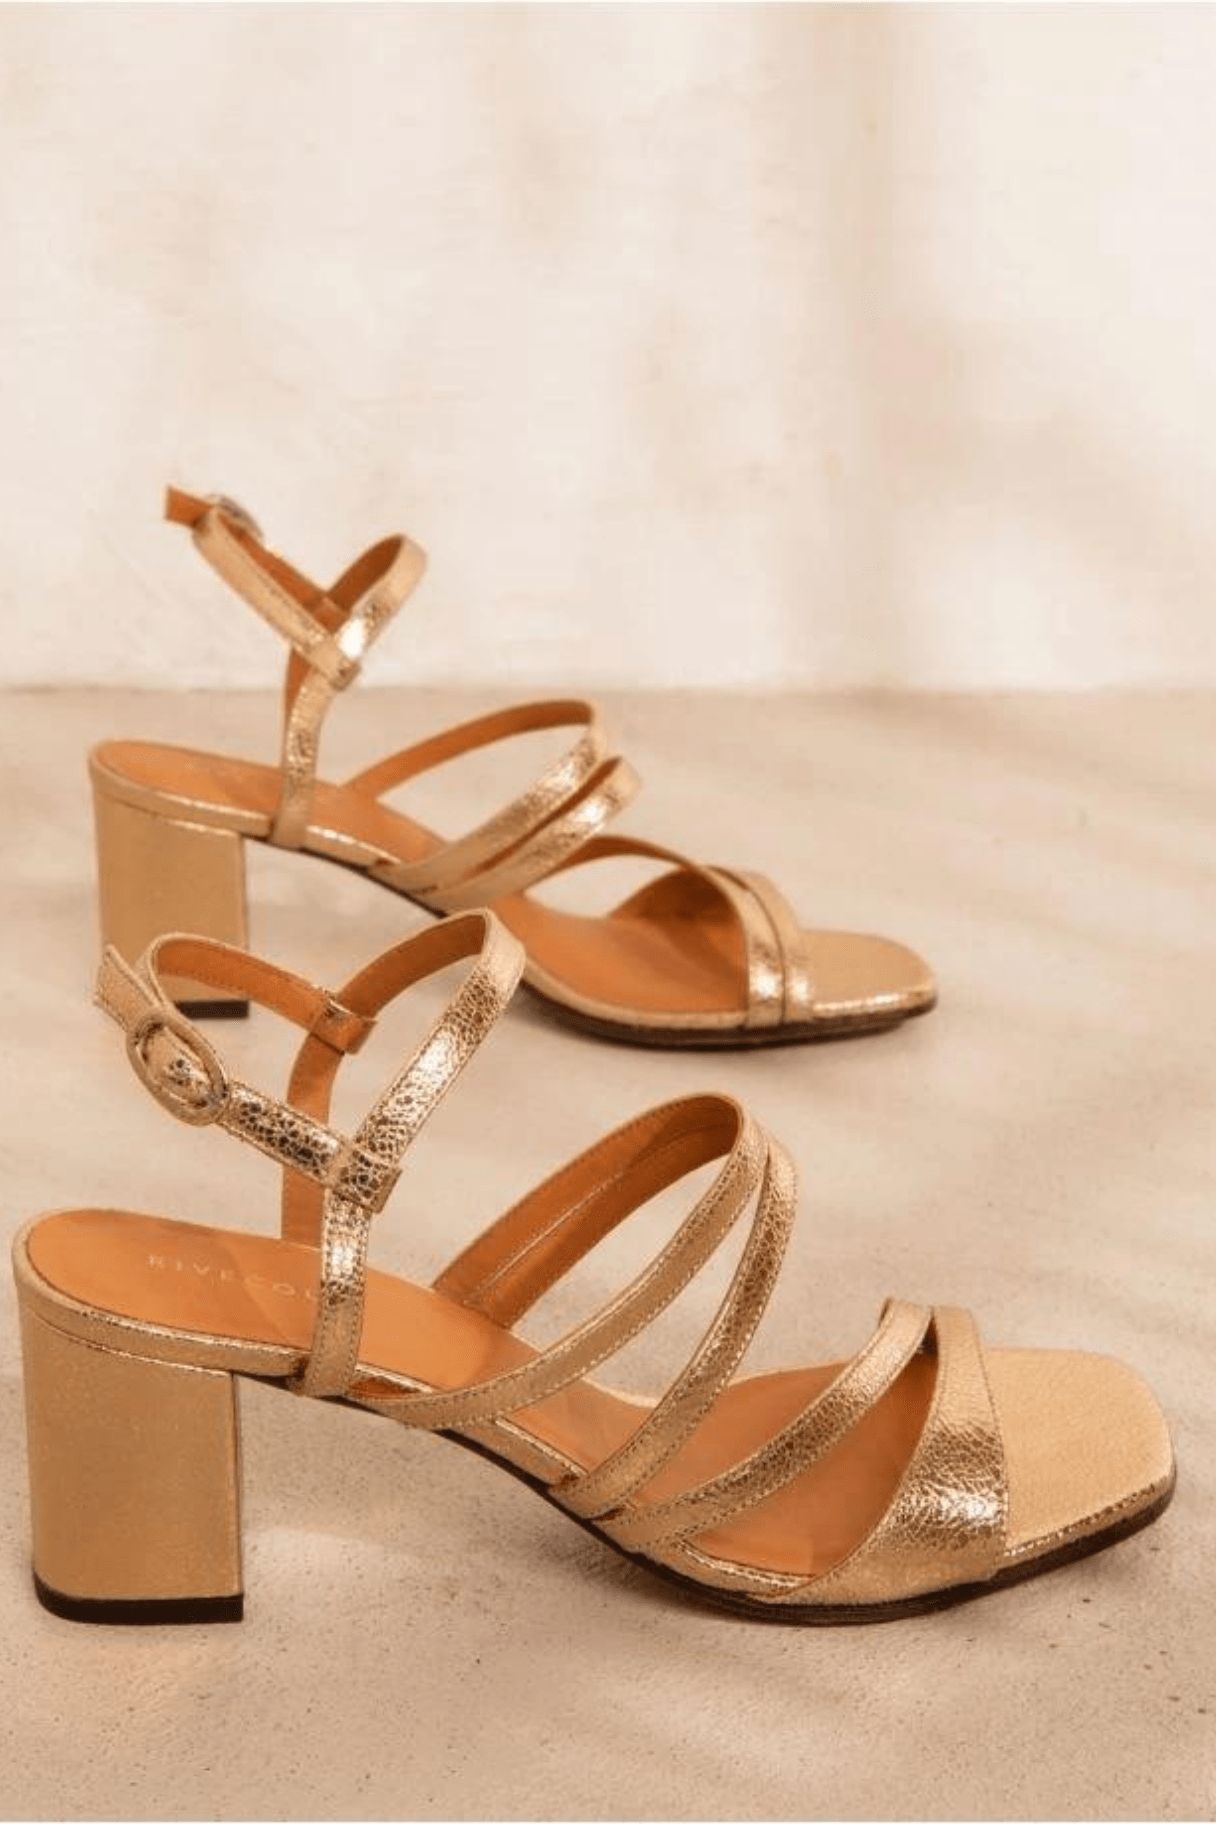 Rivecour sandales n°653 Gold - Des lignes graphiques et minimalistes - Nappa Maroquinerie